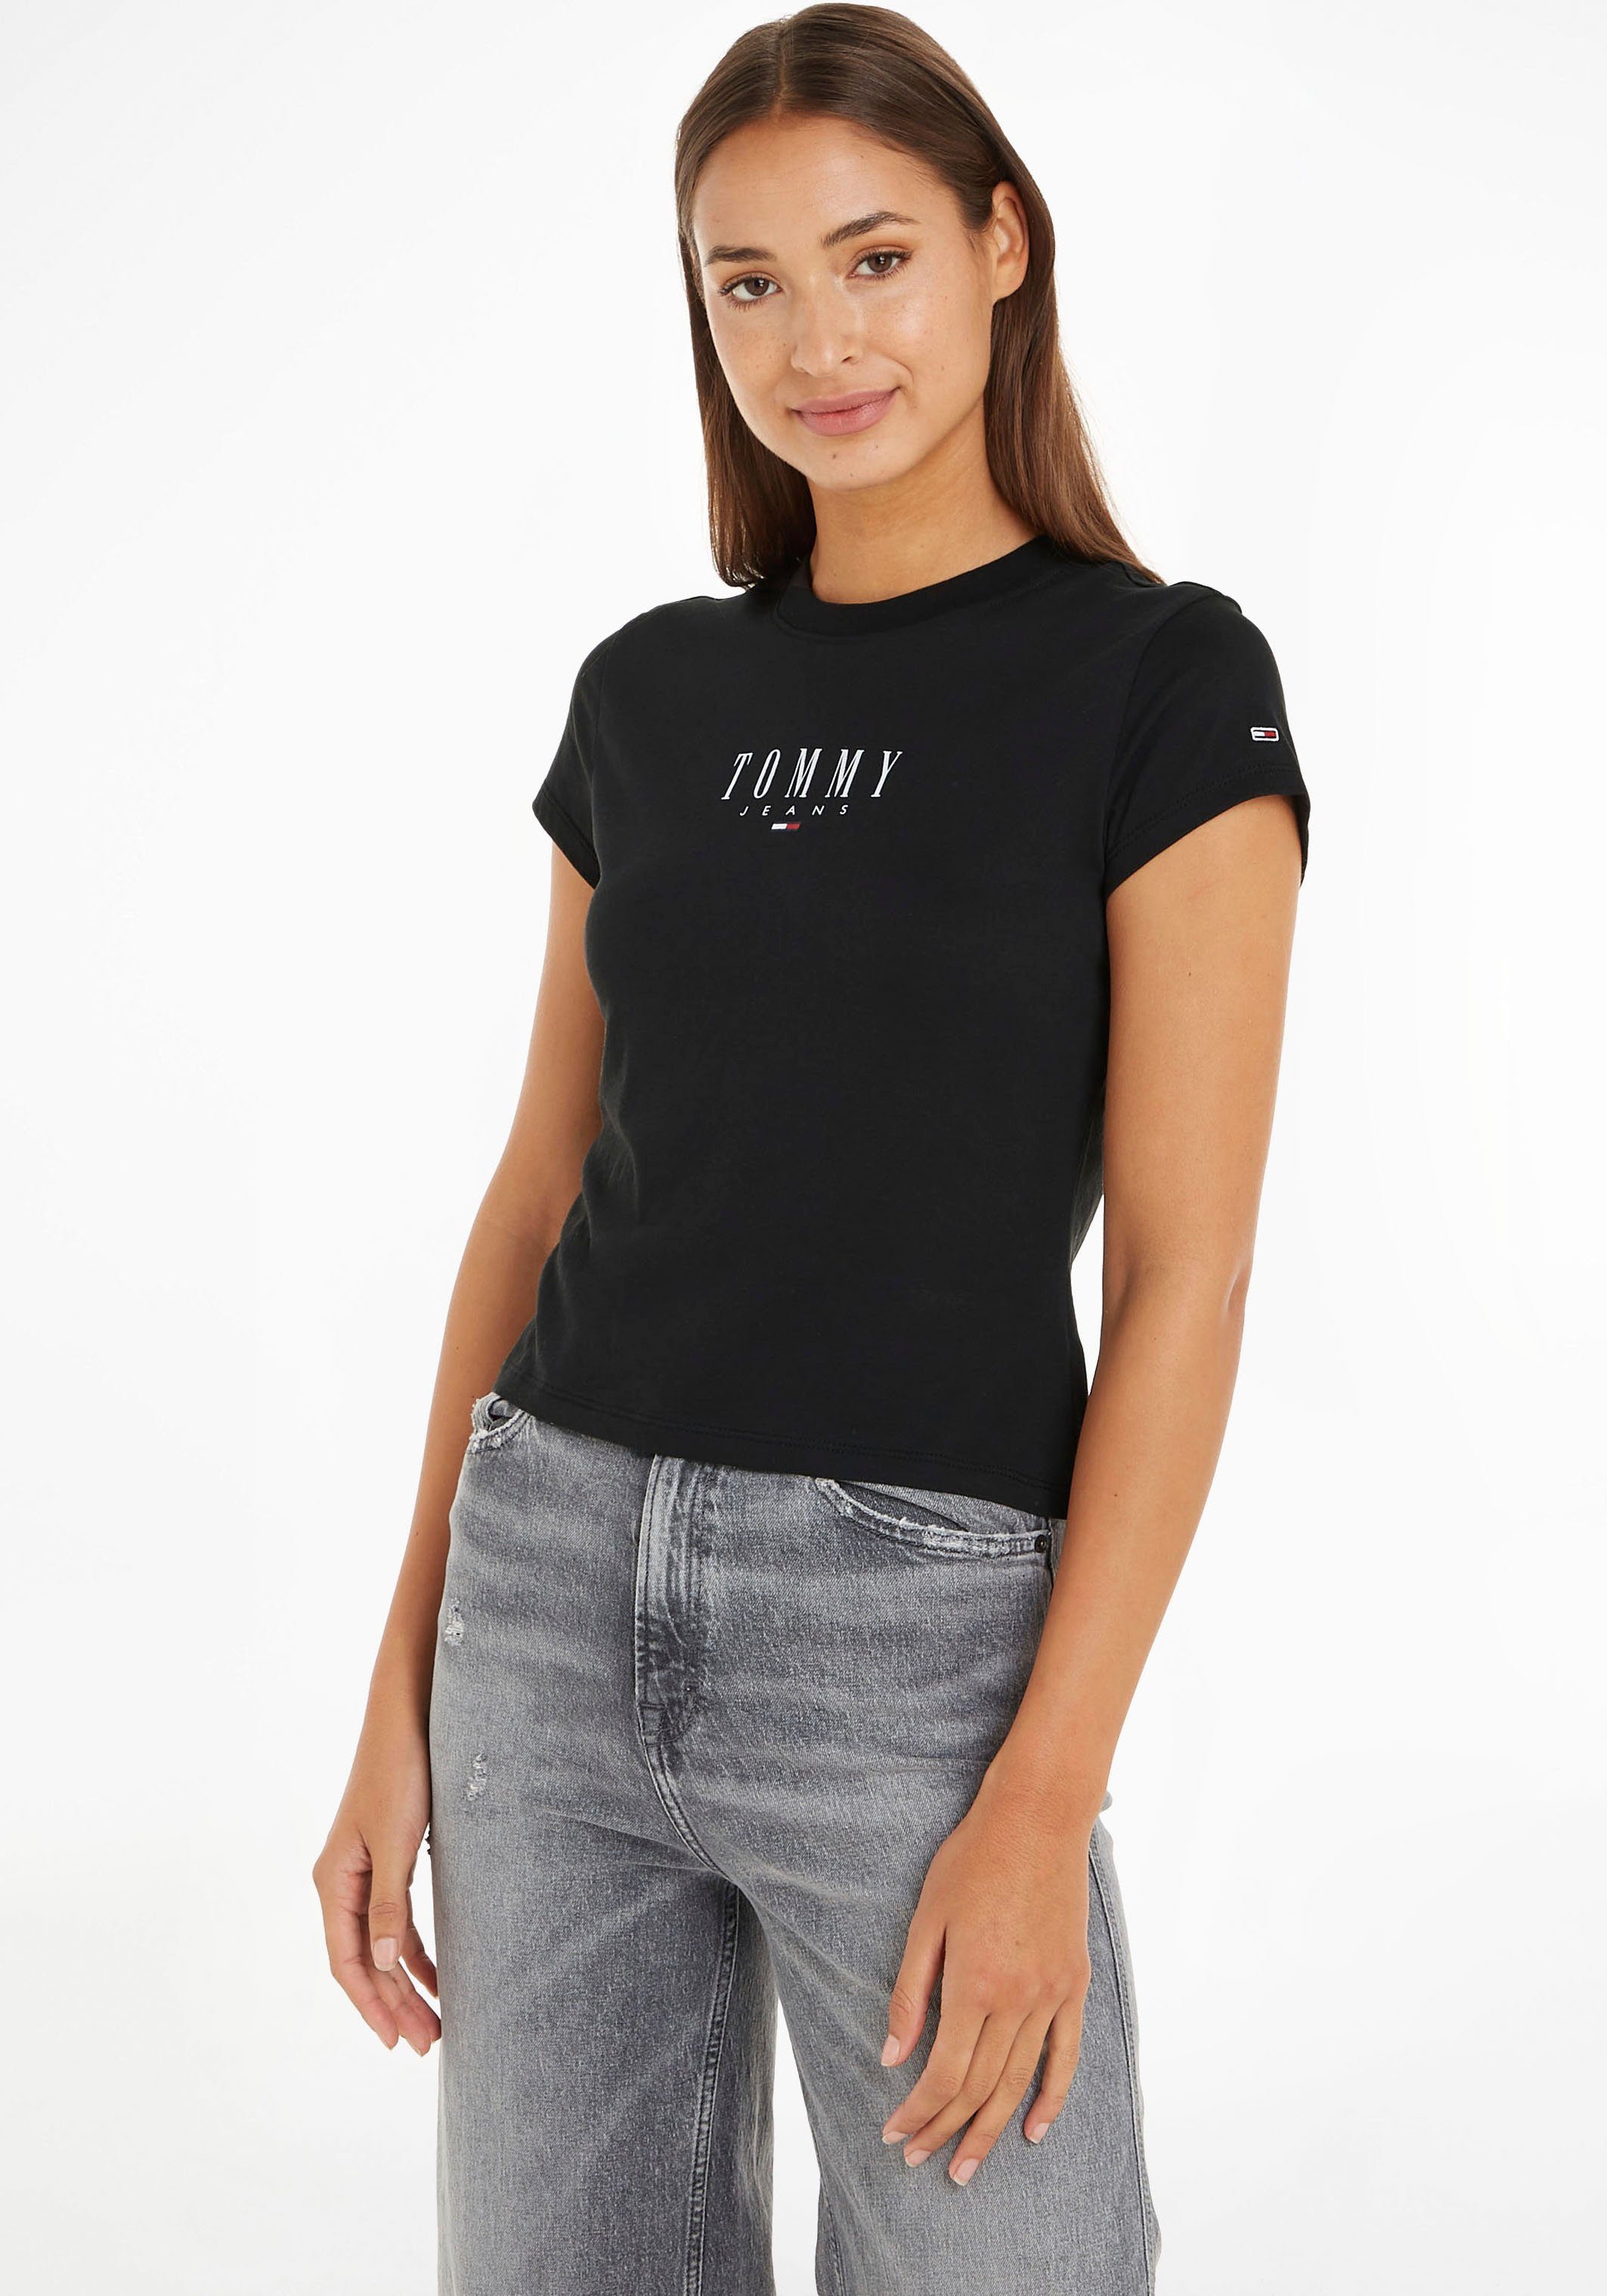 Tommy Hilfiger Shirts für Damen online kaufen | OTTO